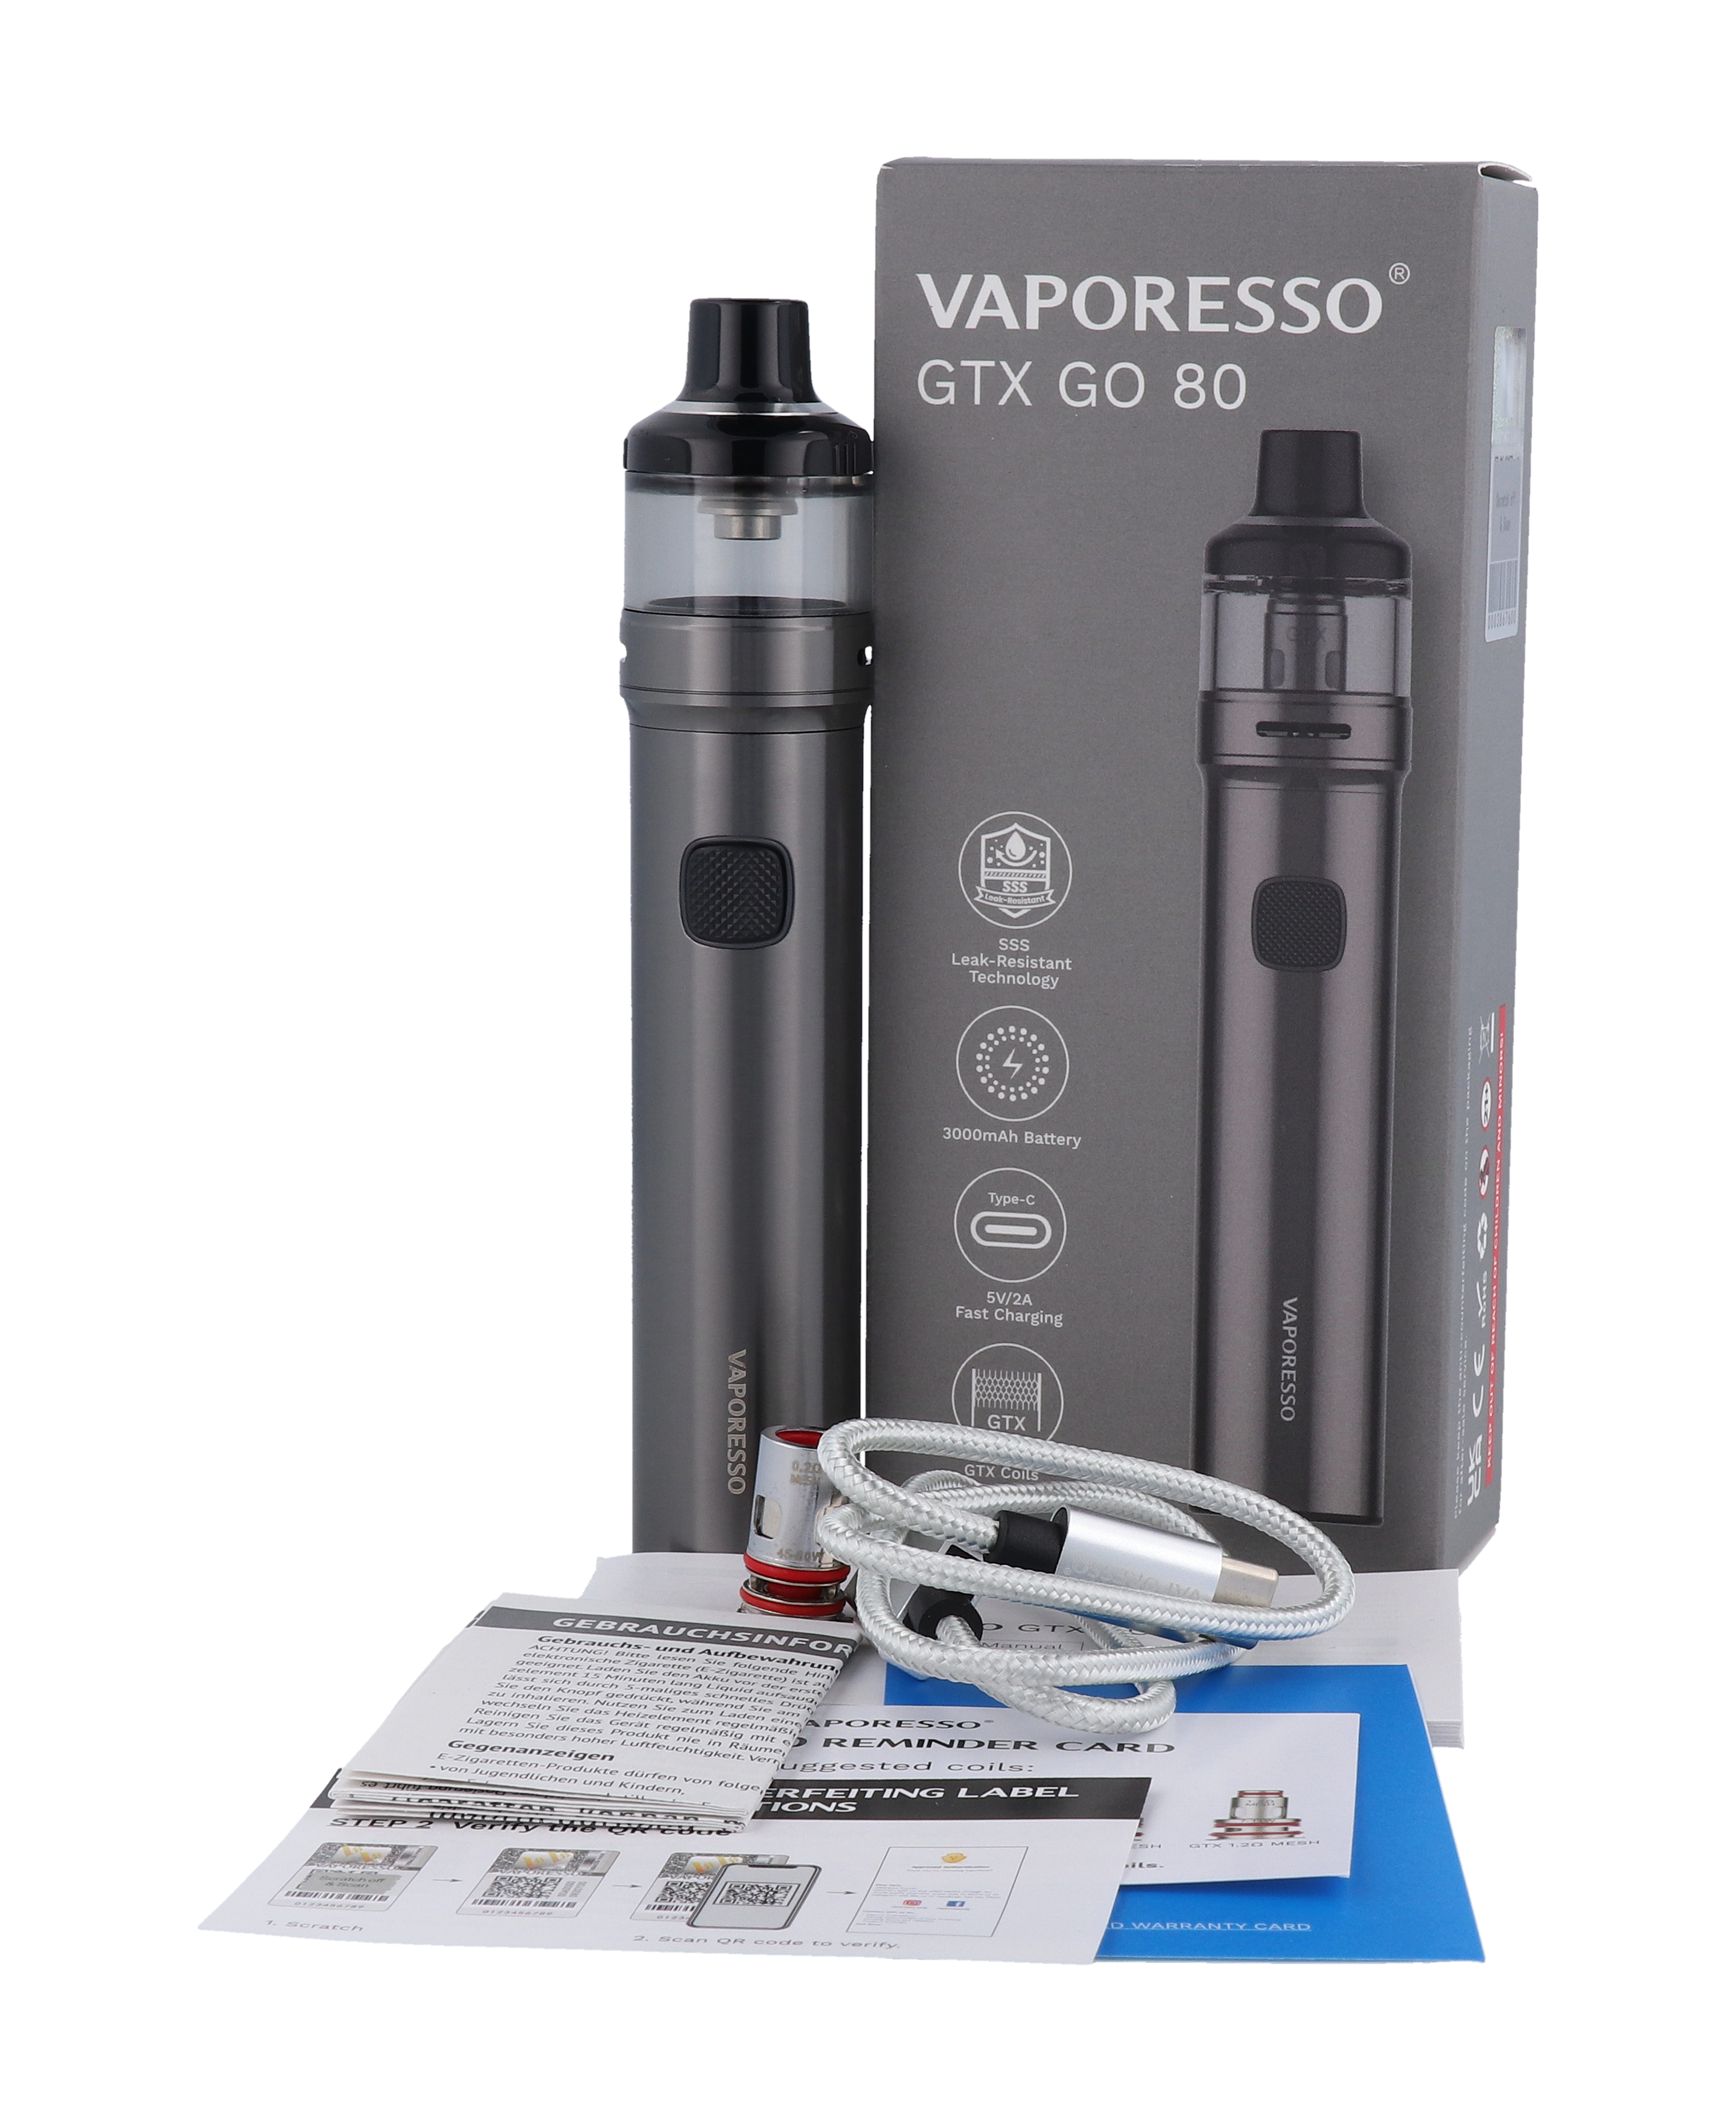 Vaporesso GTX GO 80 e-cigarette